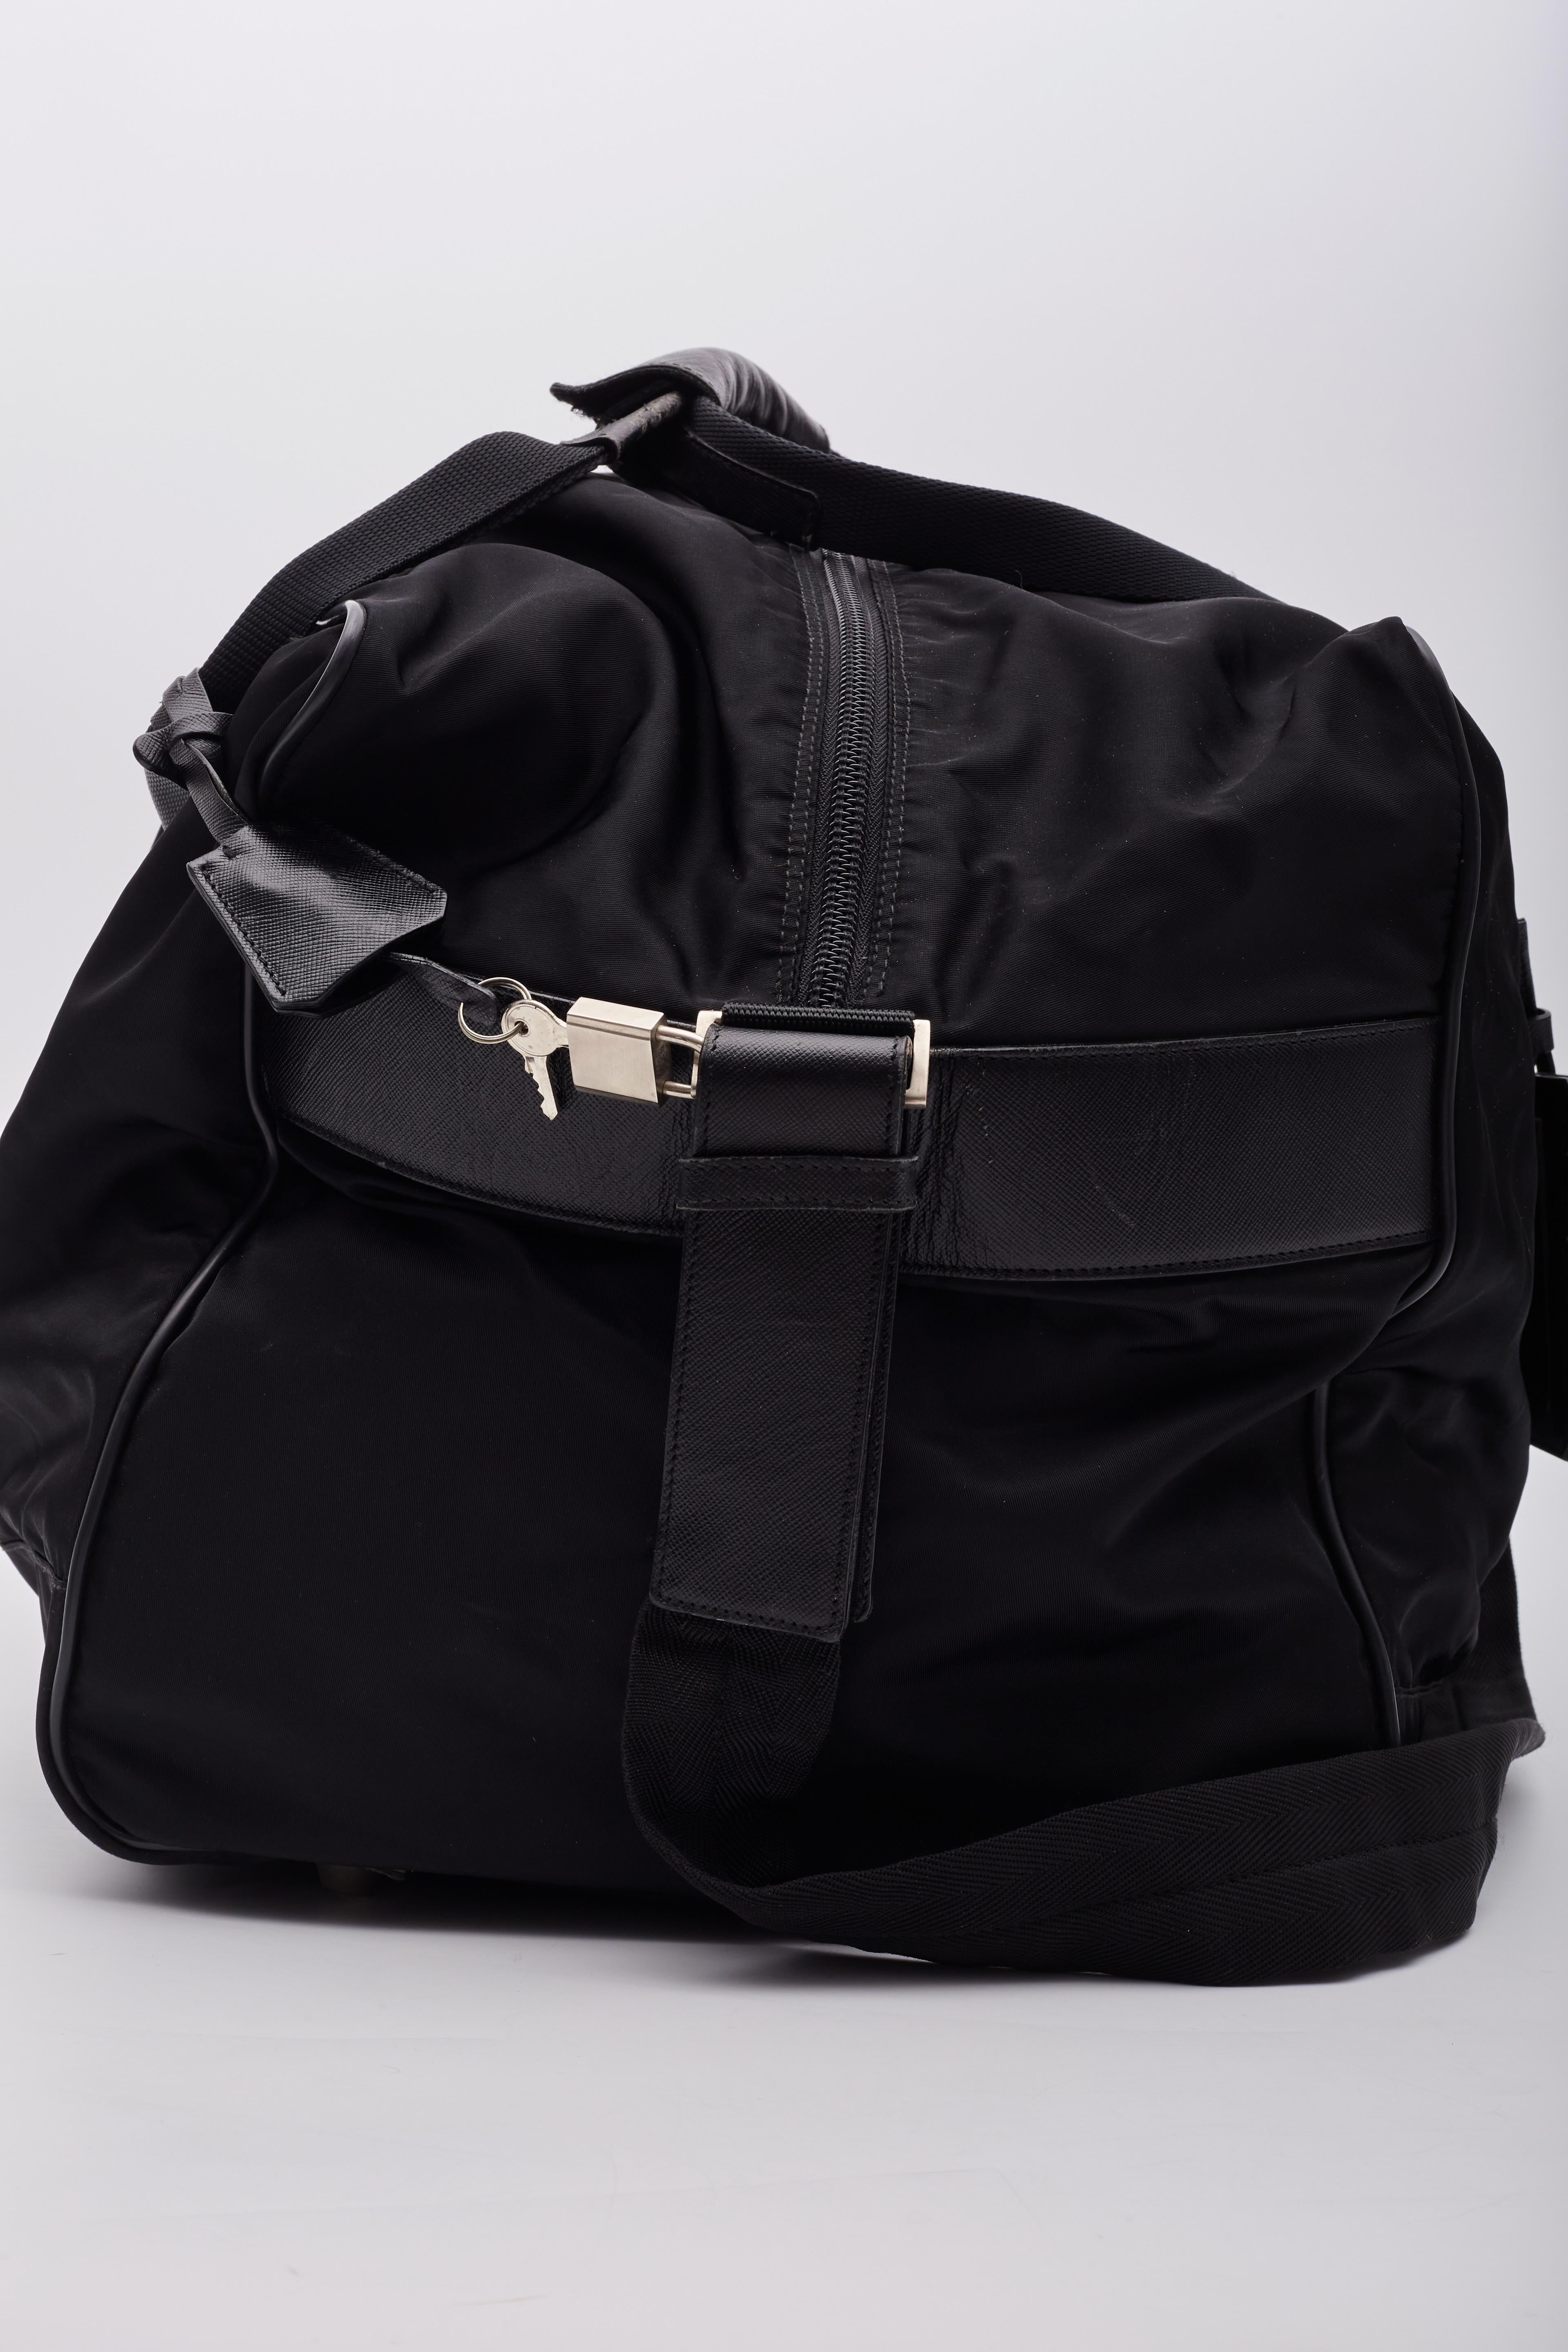 Prada Black Nylon Duffle Sports Weekender Bag en vente 2